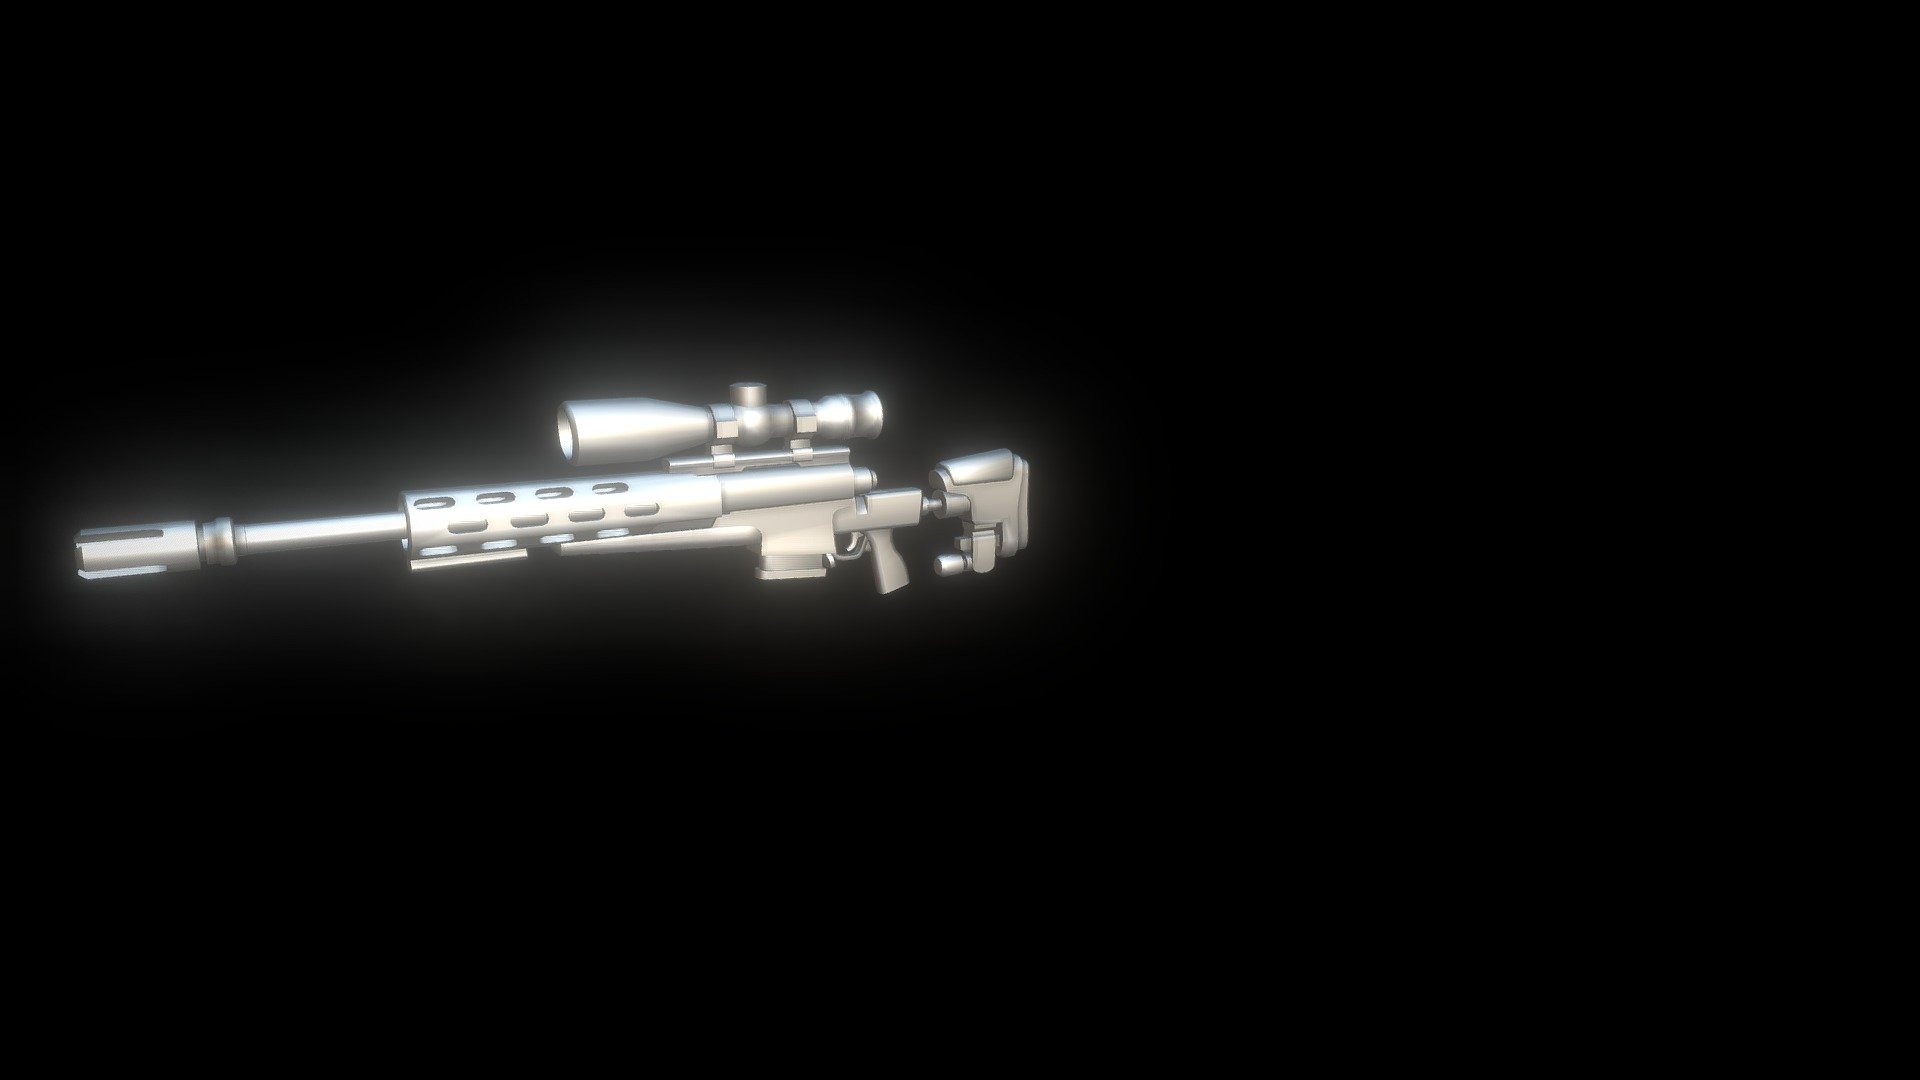 Legendary bolt action sniper rifle from Fortnite